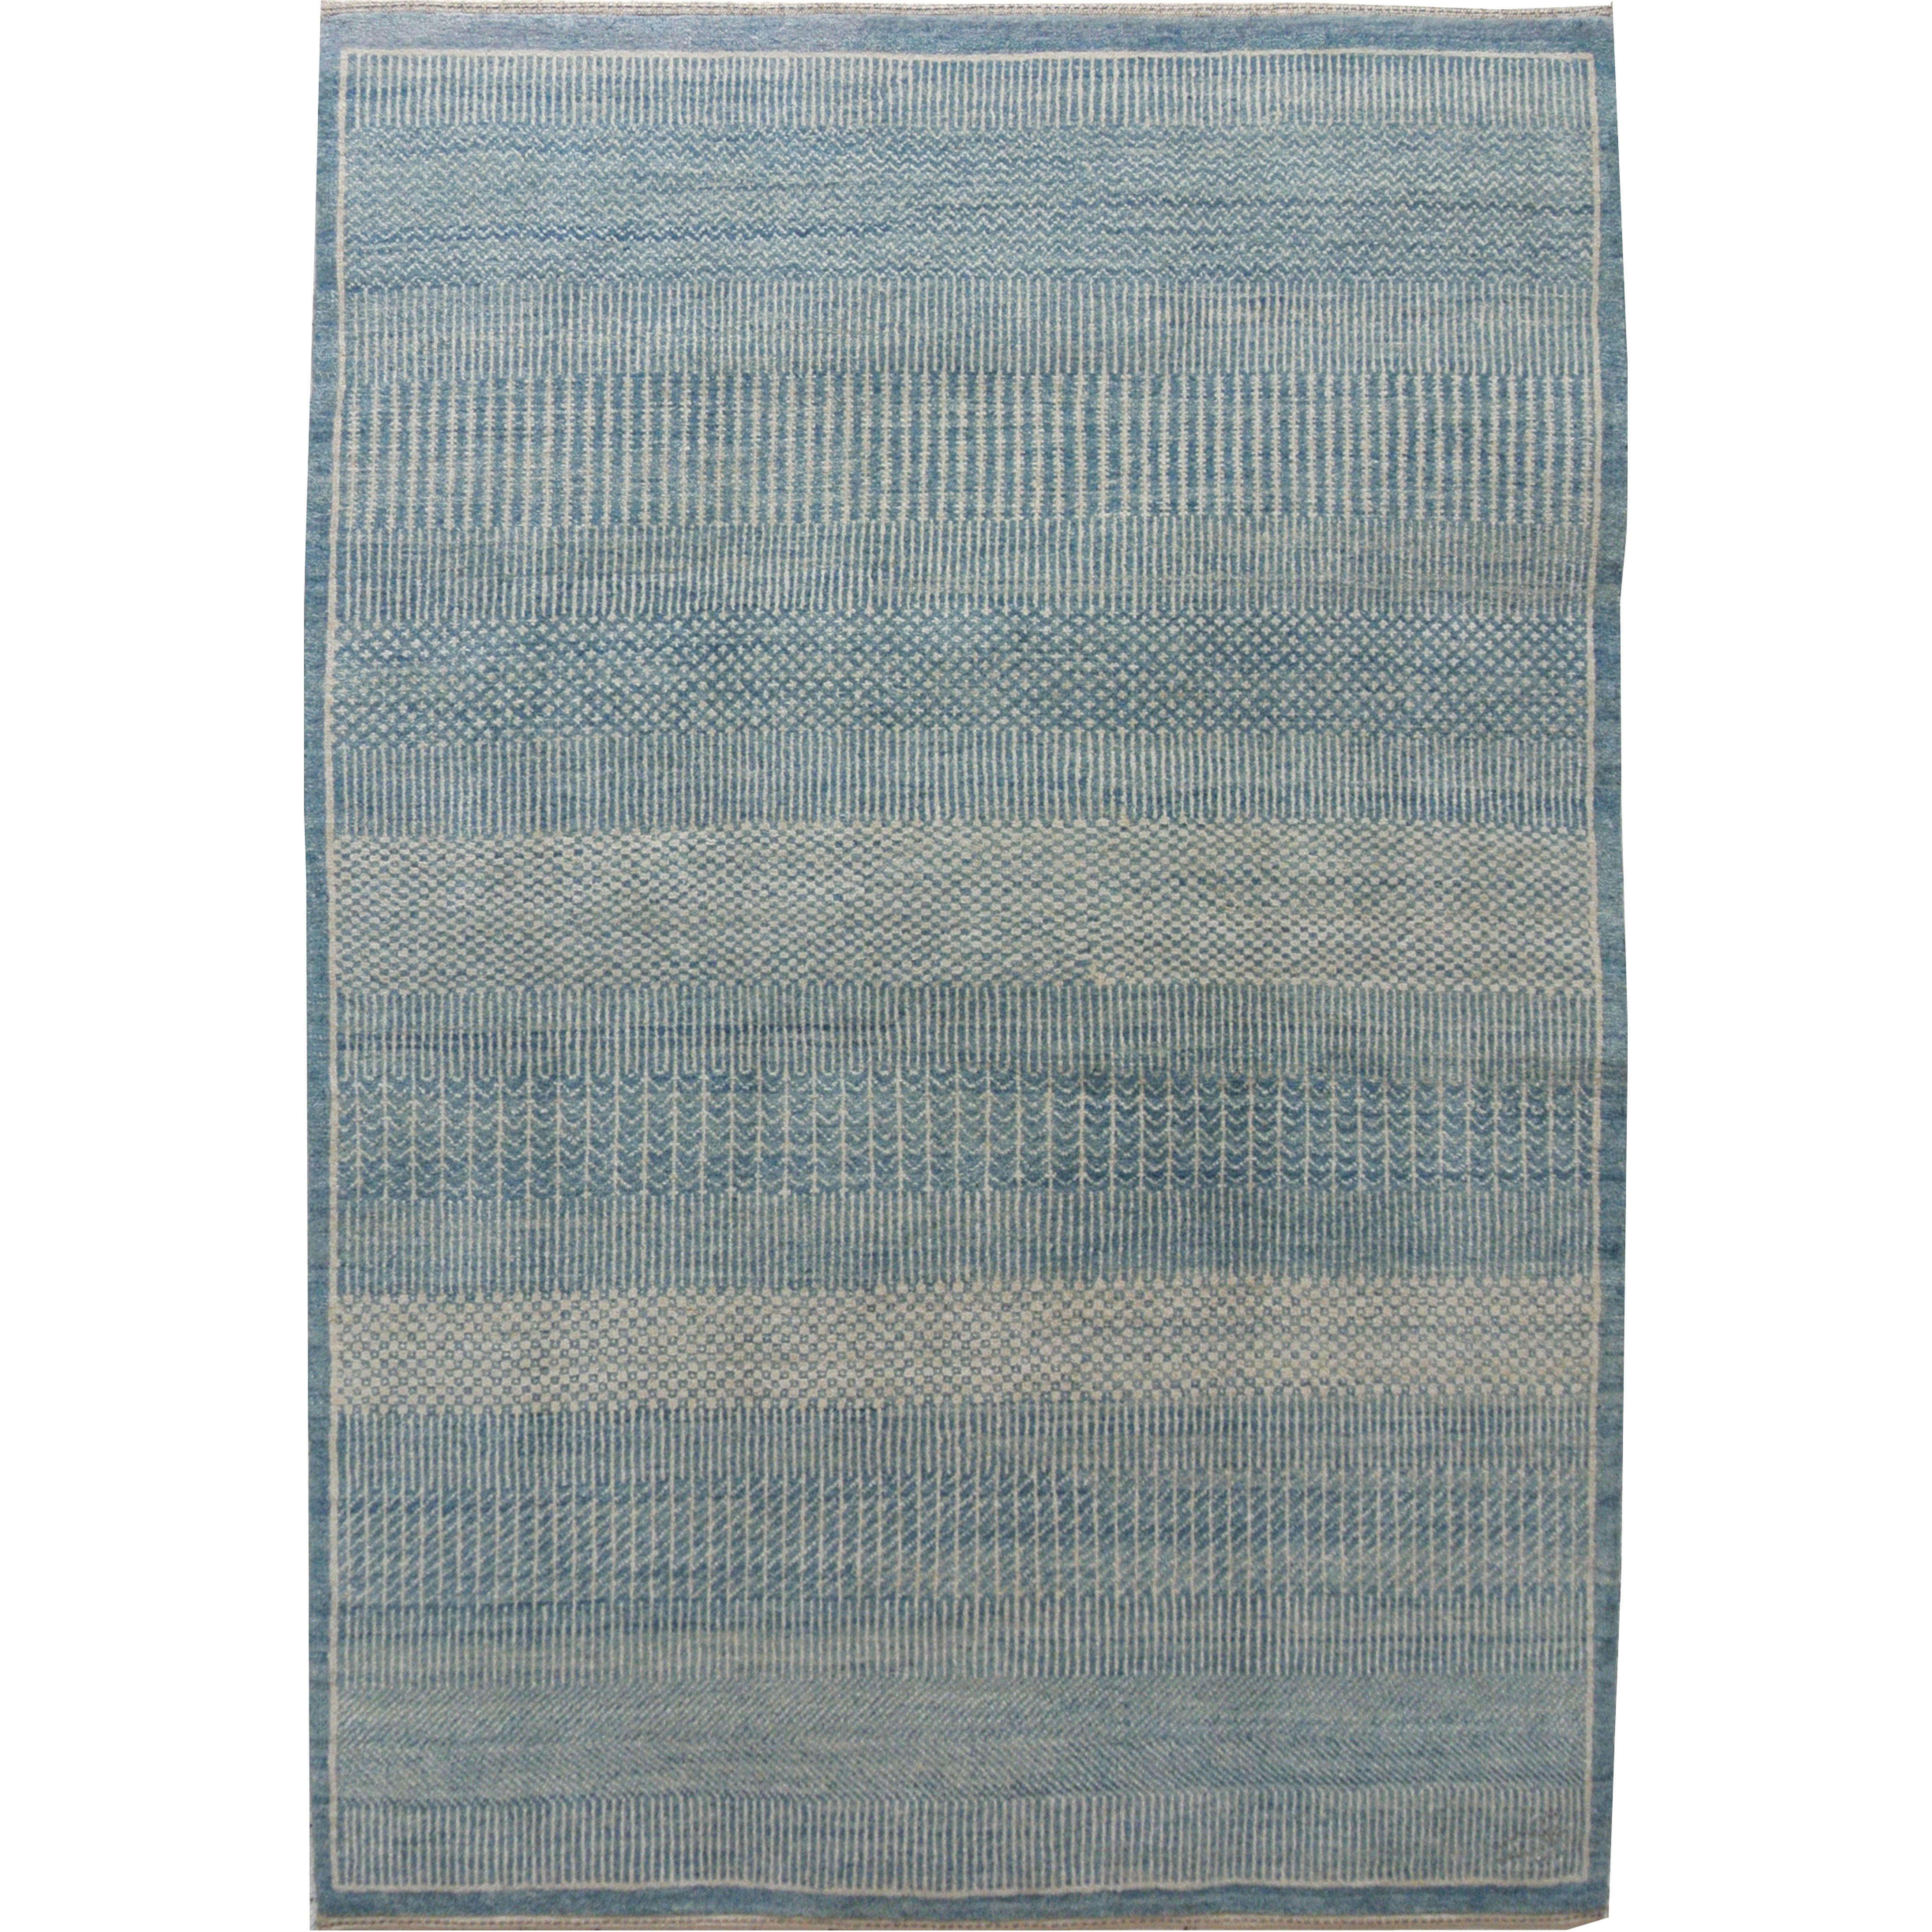 Tapis persan contemporain en laine, bleu et crème, Orley Shabahang, 5' x 7'